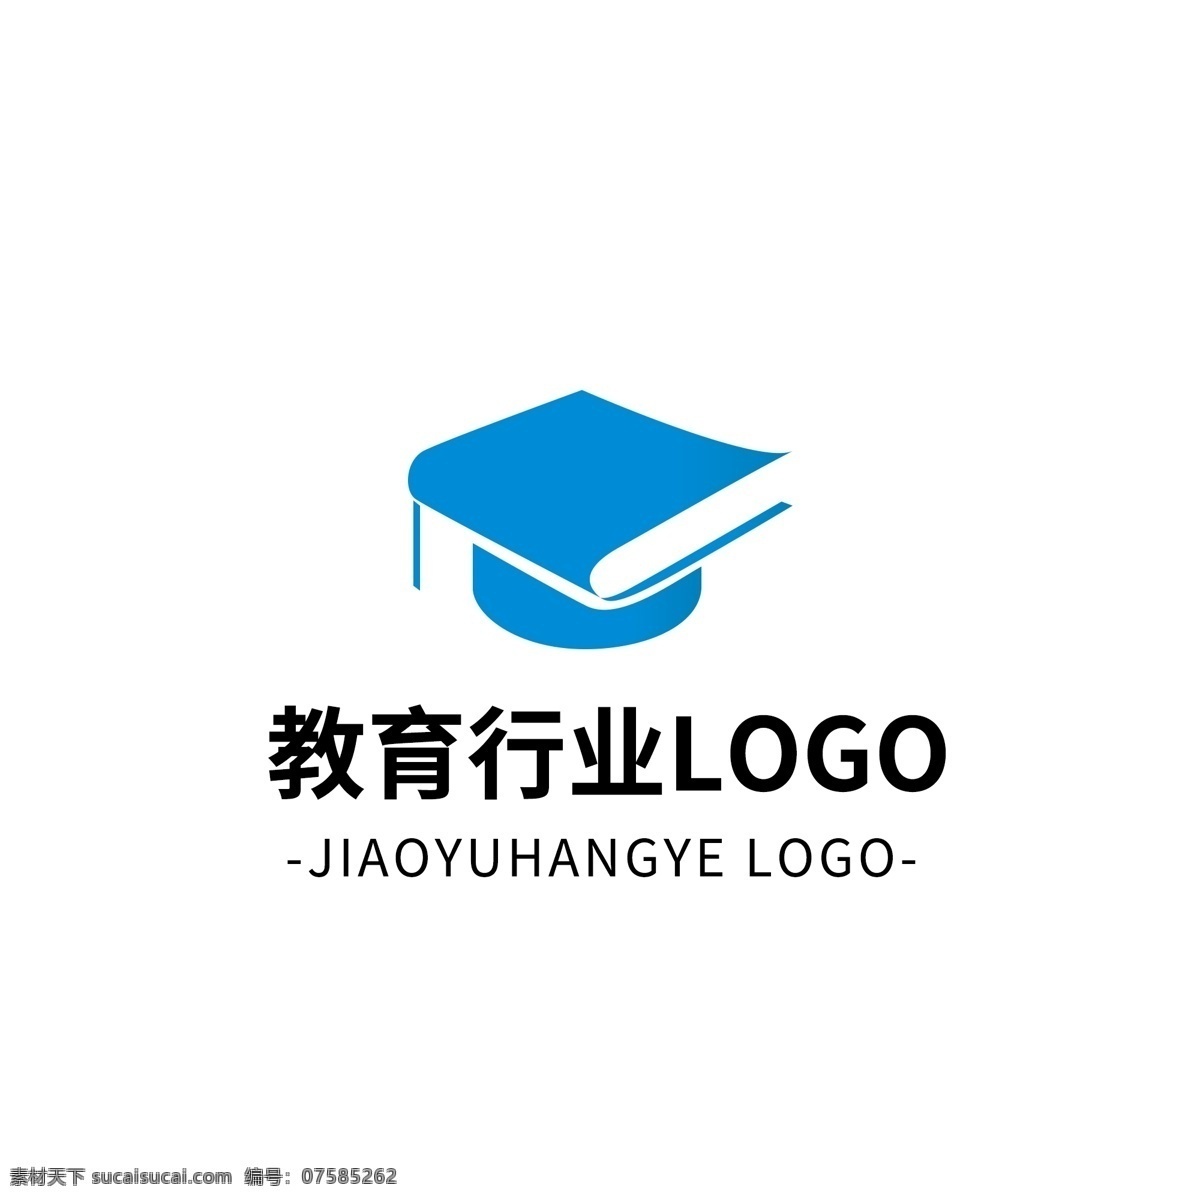 简约 大气 创意 教育 行业 logo 标志设计 蓝色c 图形 矢量d